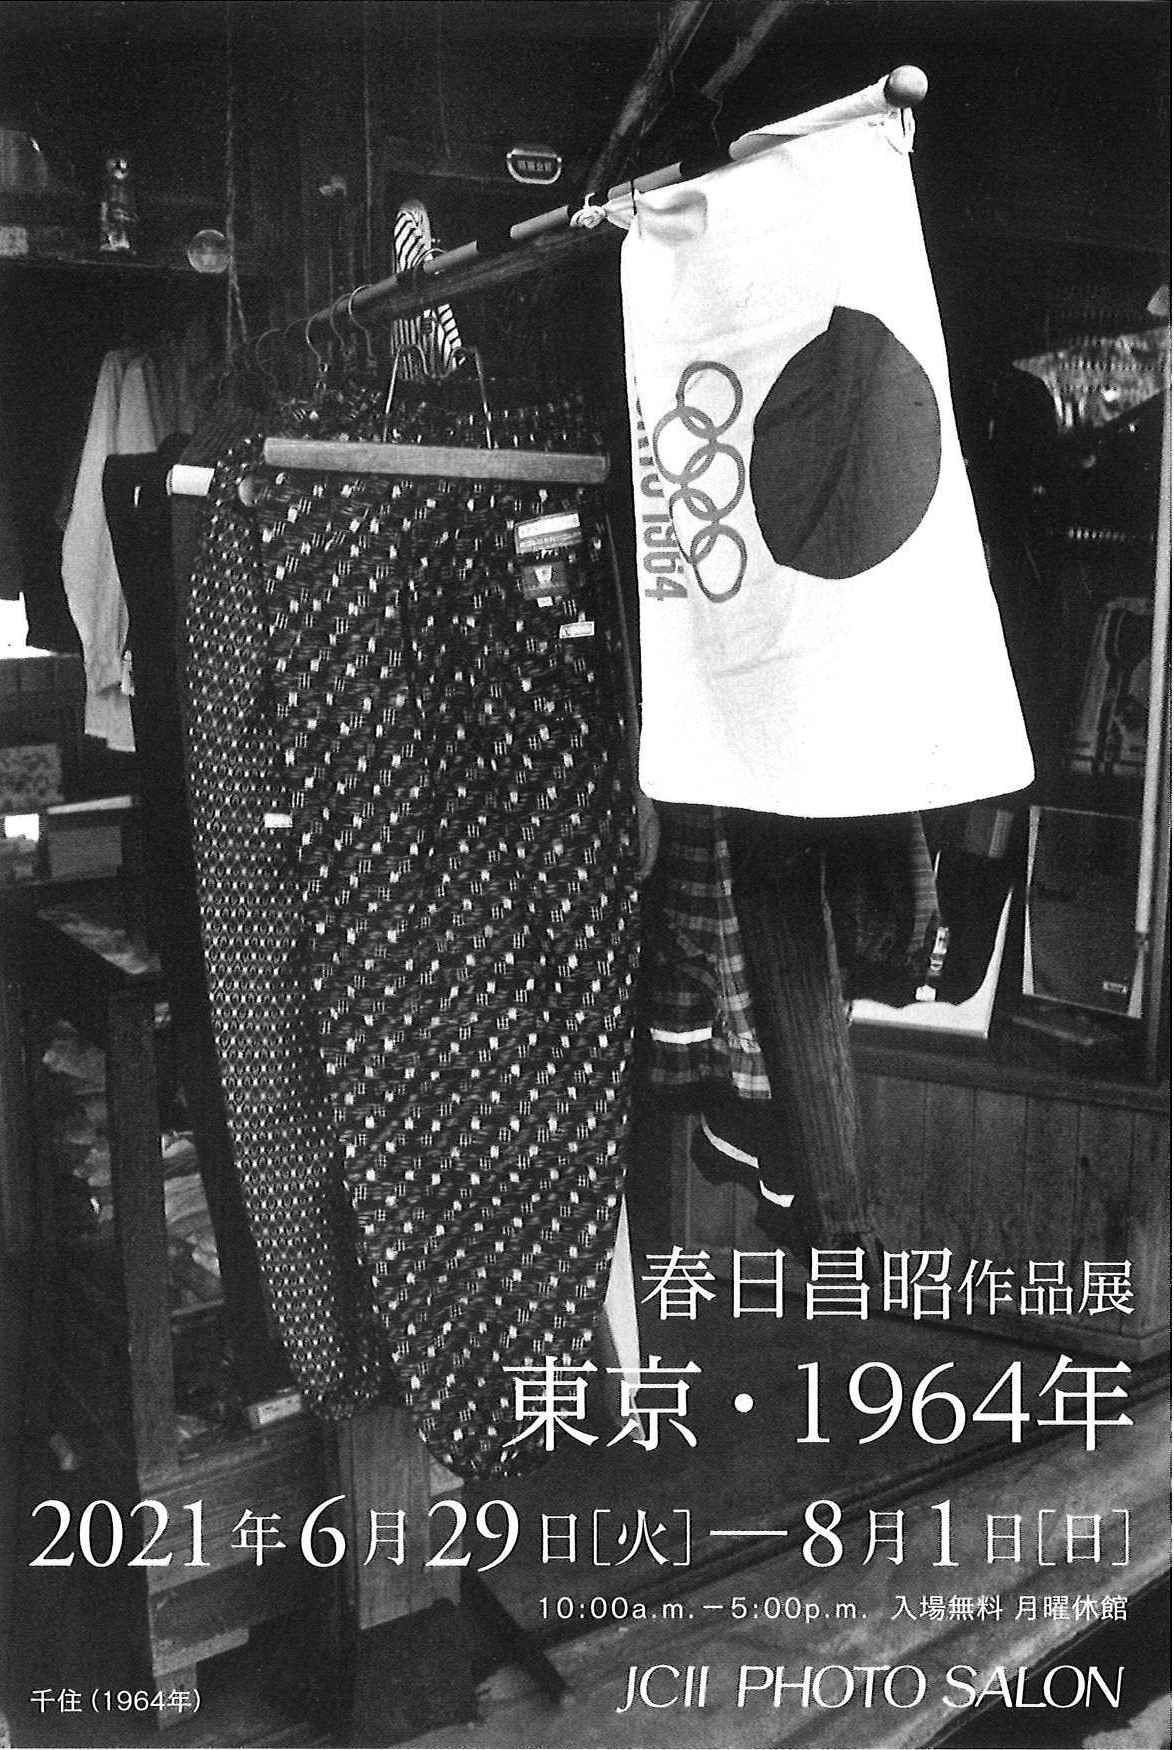  春日昌昭作品展 「東京・1964年」 